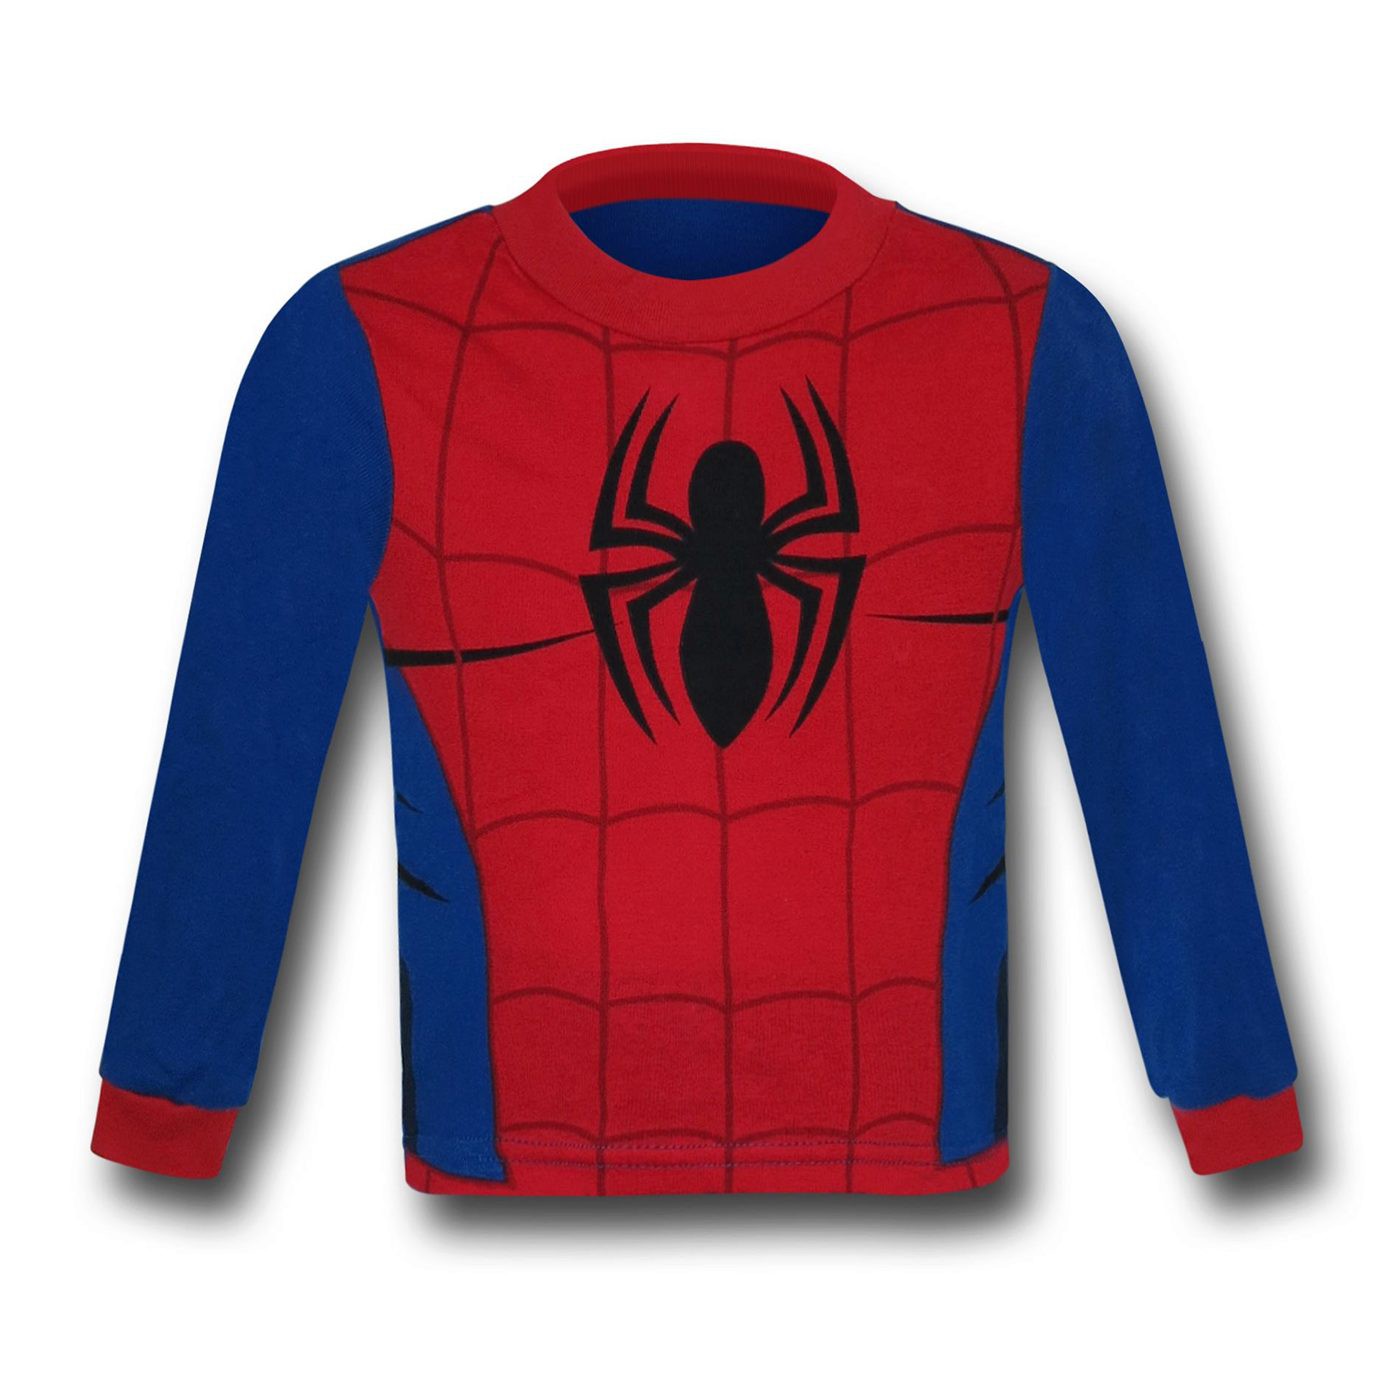 Spiderman Webhead Costume Kids Pajama Set